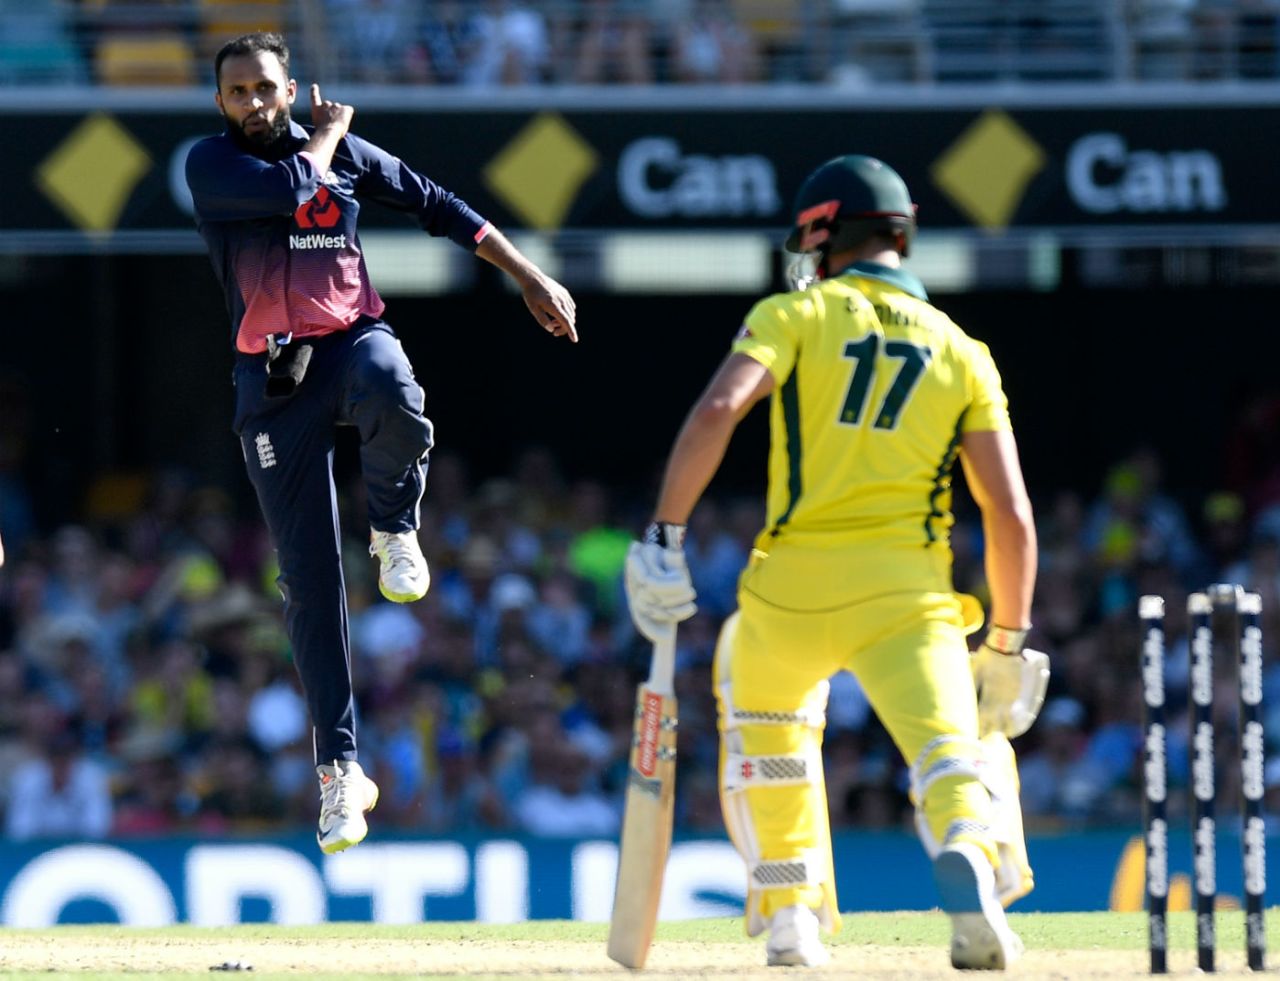 Adil Rashid claimed the wicket of Marcus Stoinis, Australia v England, 2nd ODI, Brisbane, January 19, 2018